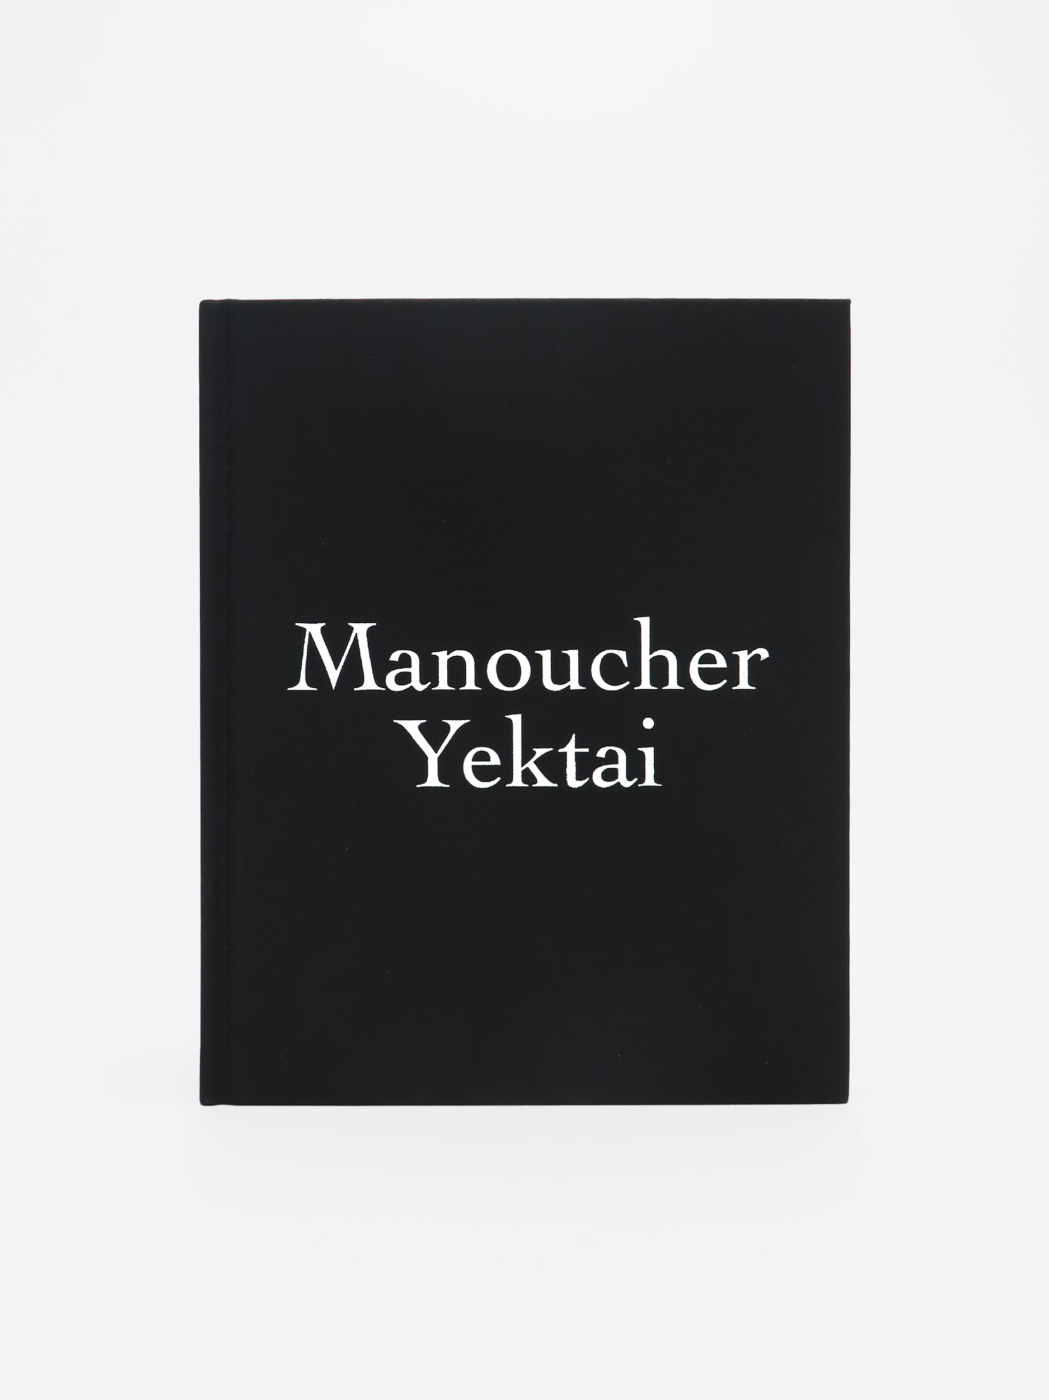 Manoucher Yektai